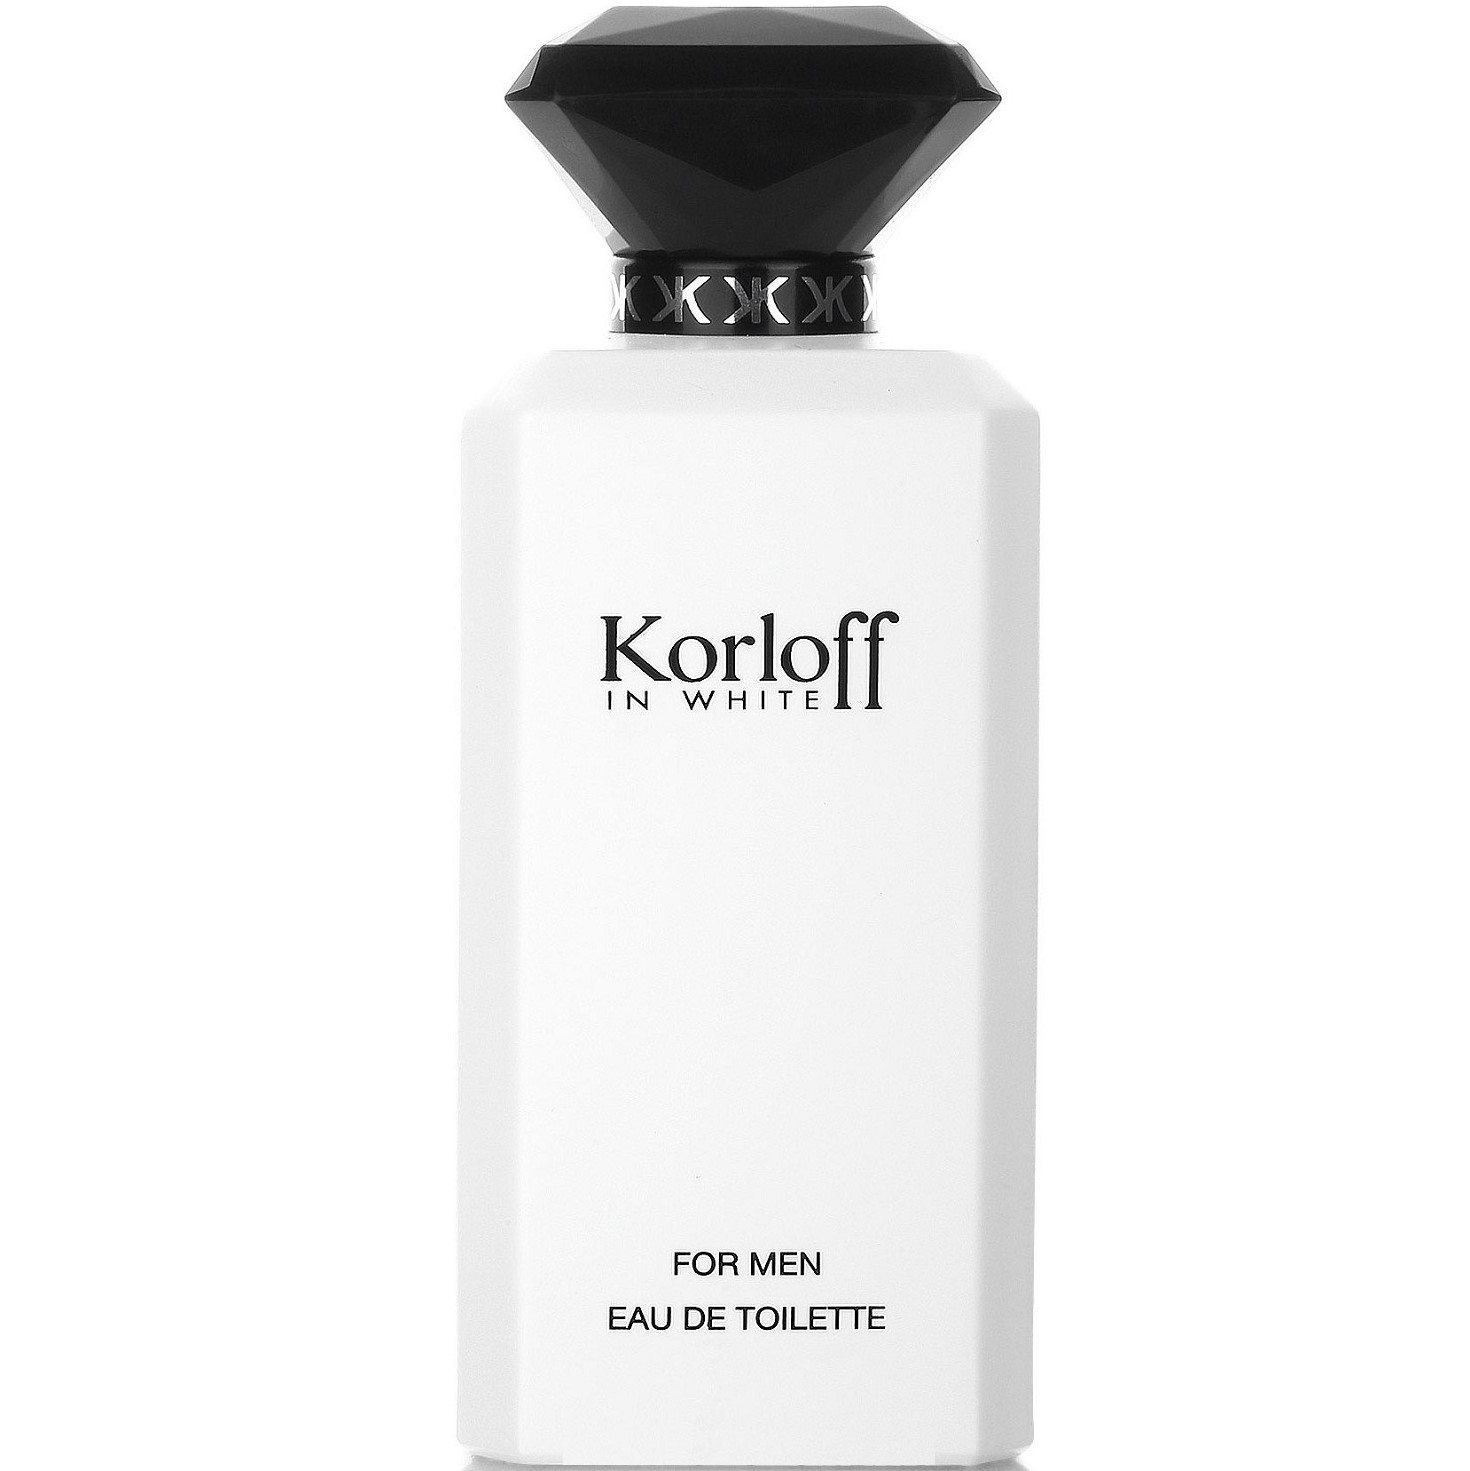 Карлов парфюм мужской. Туалетная вода Korloff in White. Духи White мужские Korloff. Korloff Paris мужские духи. Парфюмерная вода Korloff Korloff.